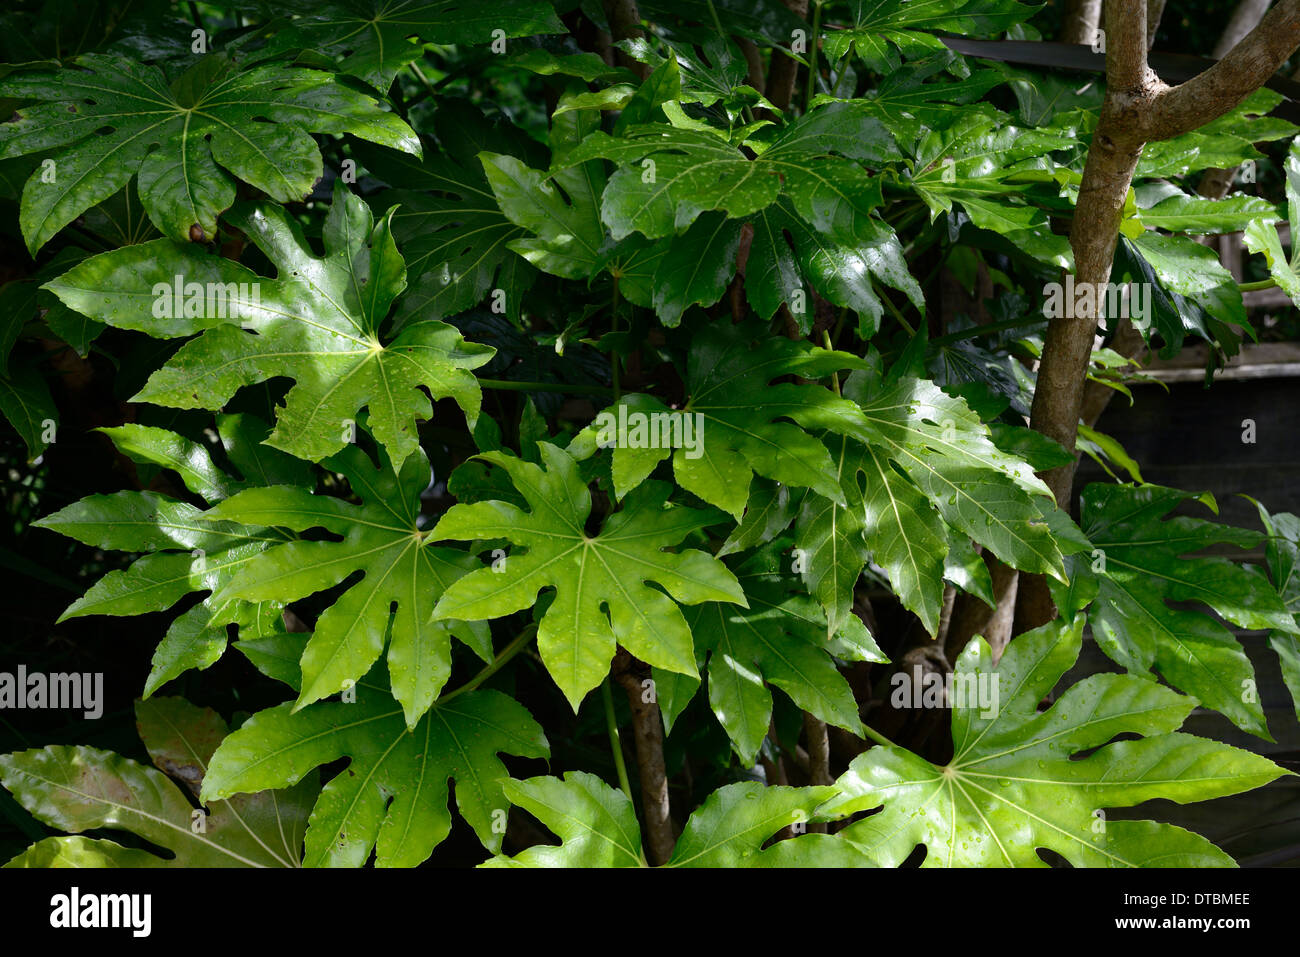 Fatsia japonica fogliame verde foglie ritratti di piante arbusti sempreverdi piante architettoniche piantagione asian Foto Stock